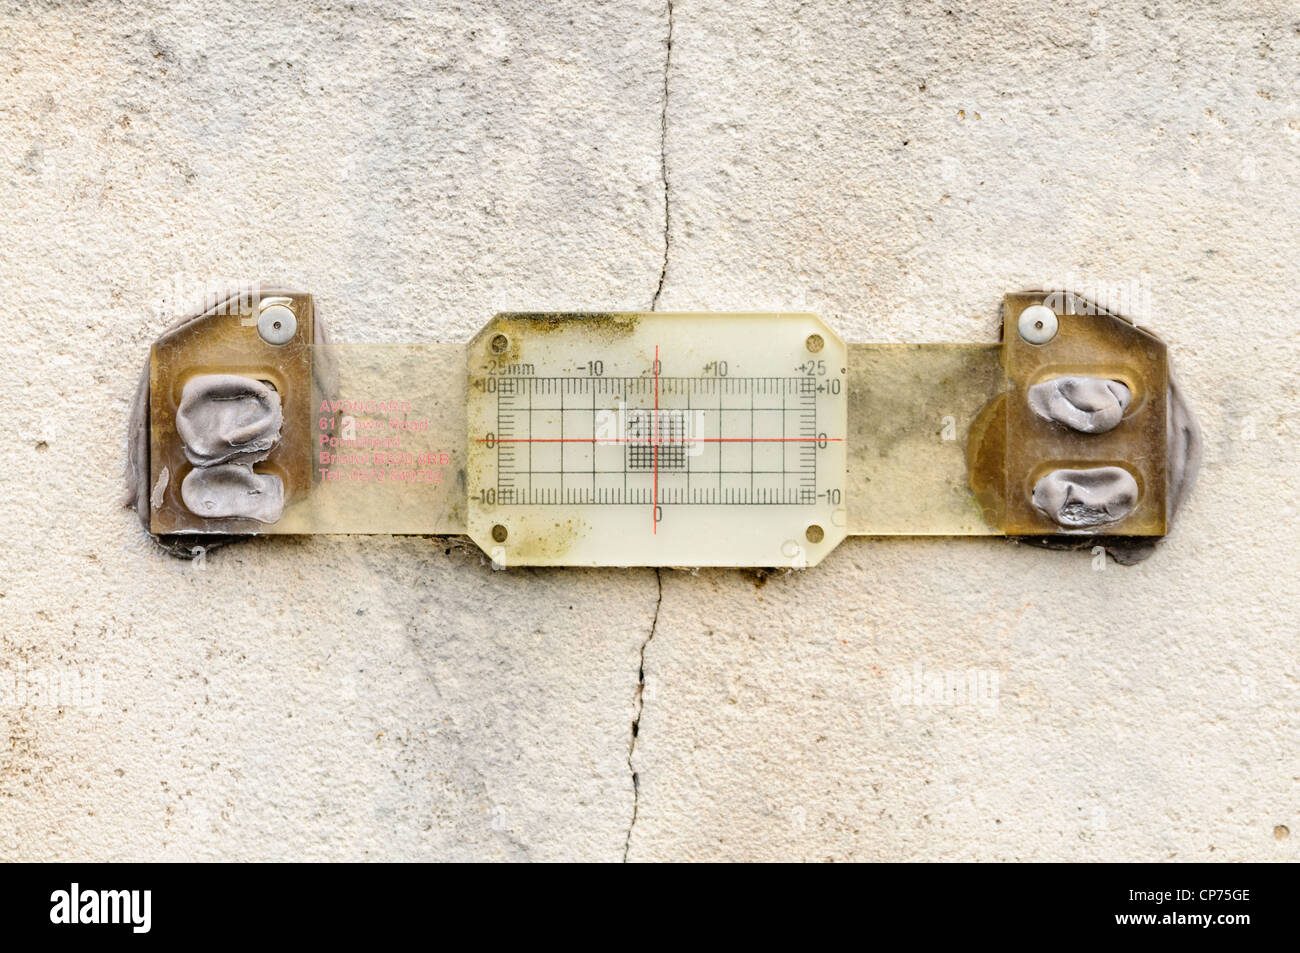 Avongard Tell-Tale surveillance crack manomètre installé pour mesurer le mouvement d'une fissure mur Banque D'Images